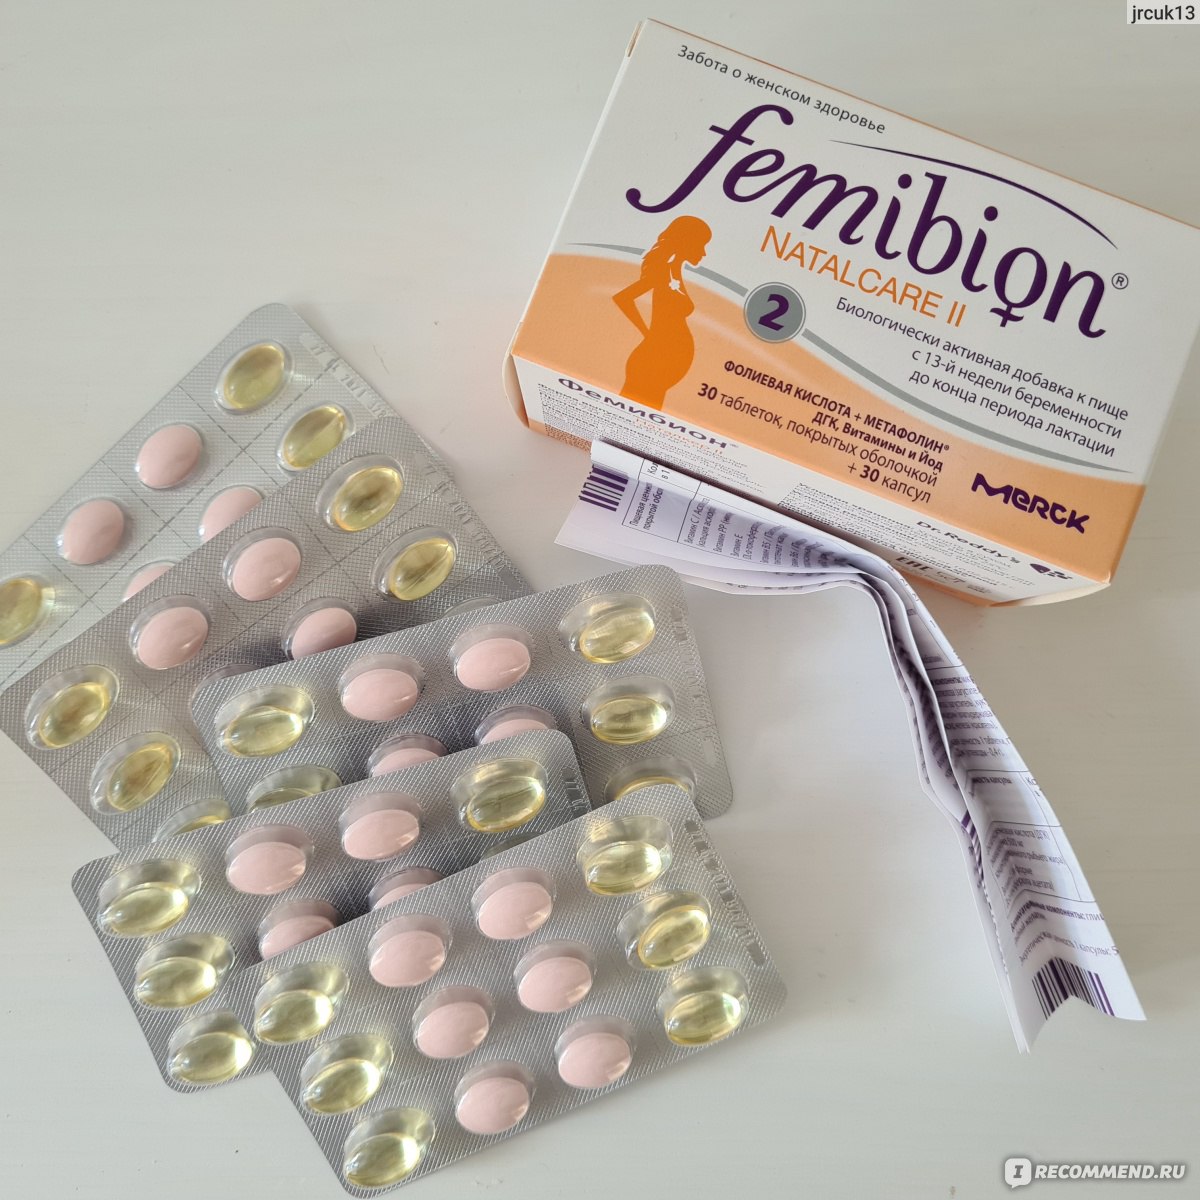 Фемибион 2 аптека. Фемибион 2. Фемибион наталкеа 2. Фемибион наталкеа. Фемибион 2 новая формула.